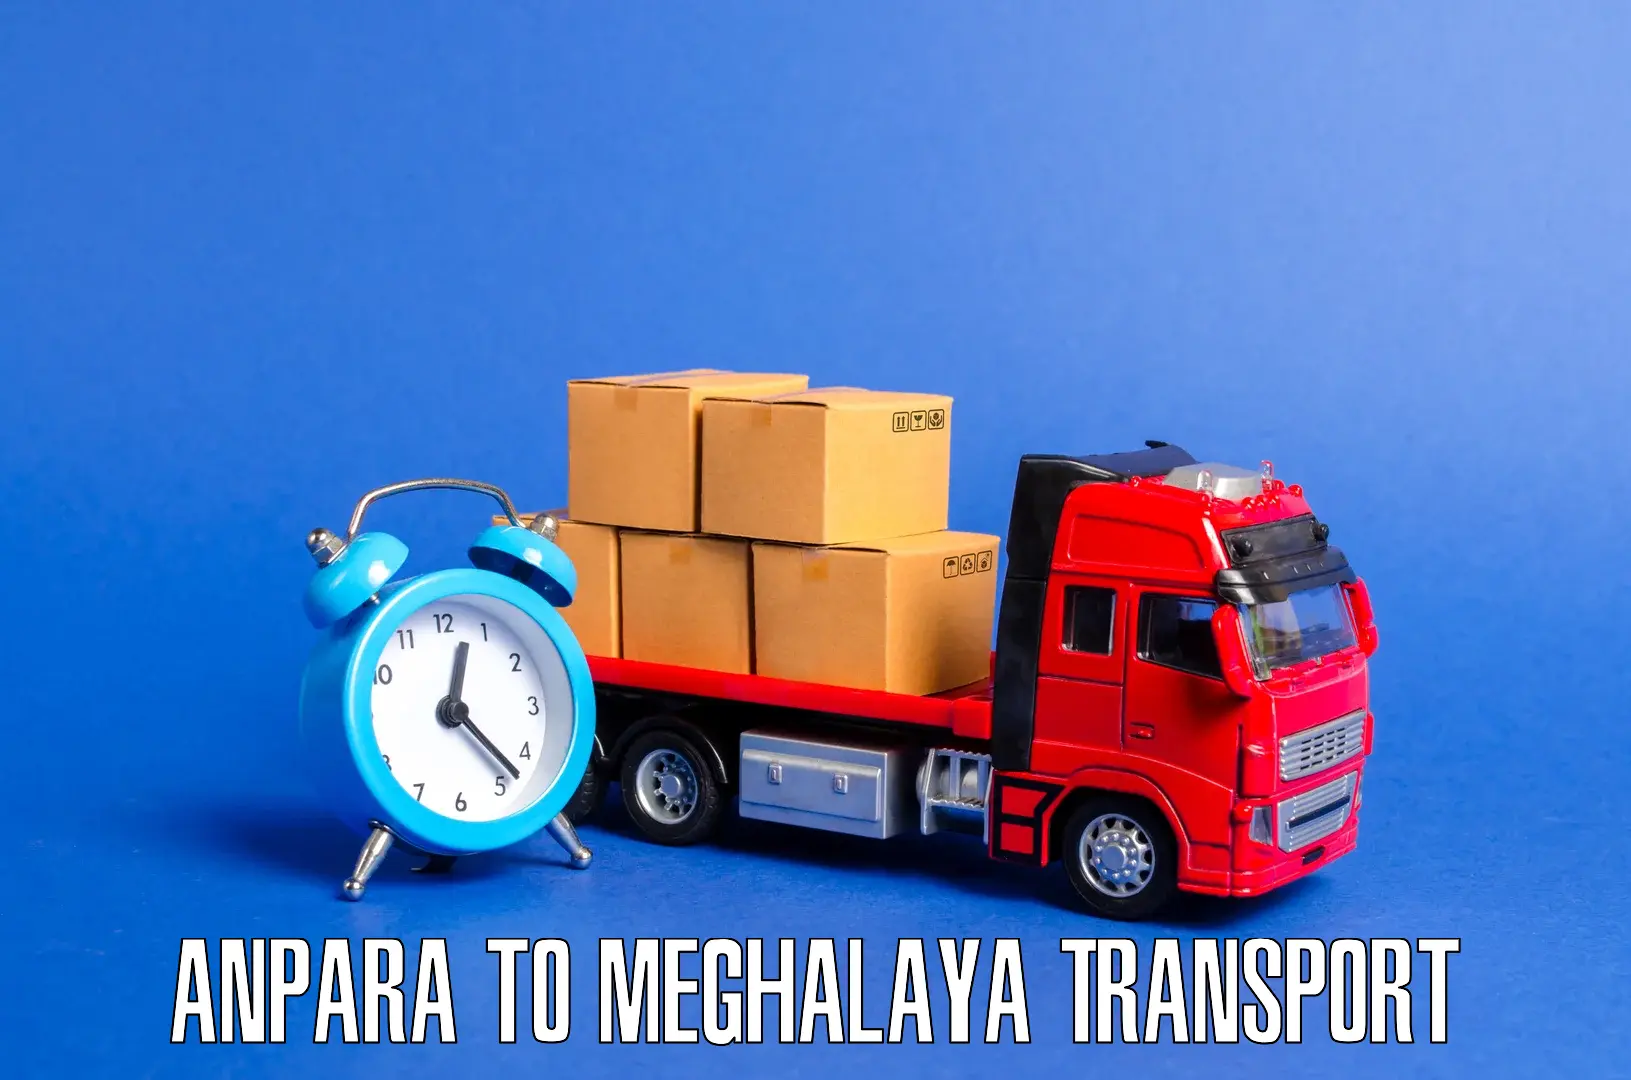 Furniture transport service Anpara to Meghalaya